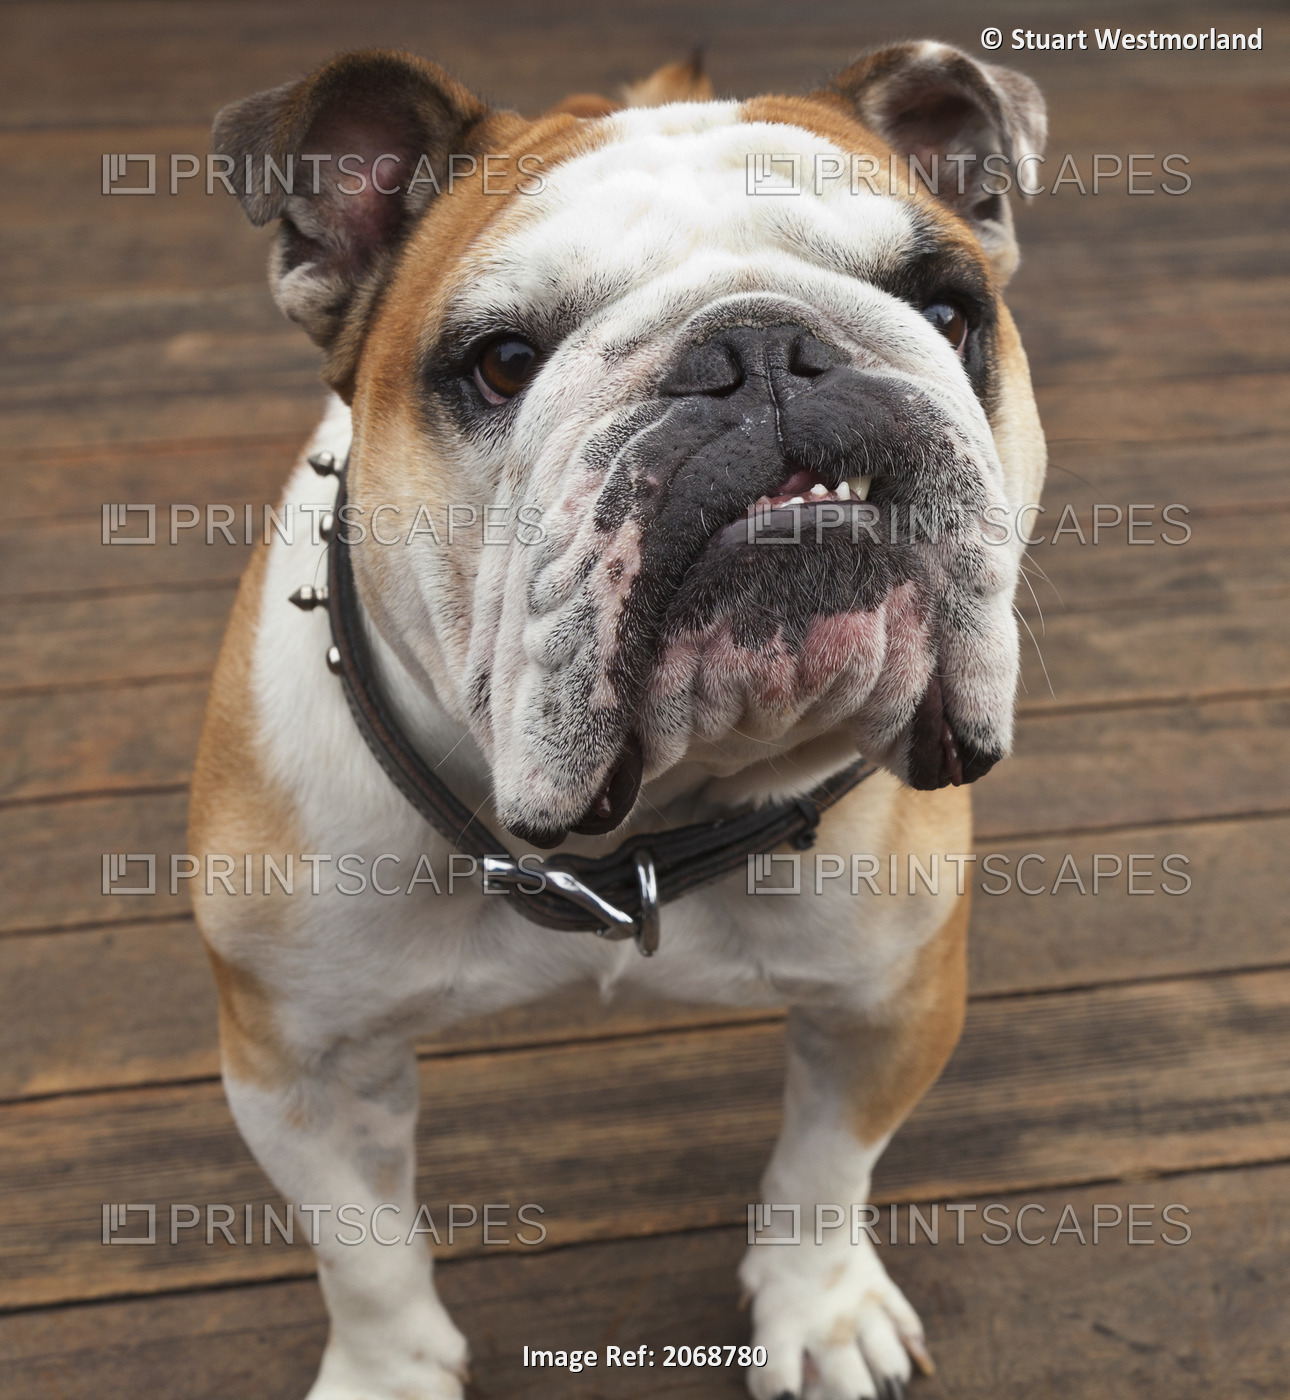 Purebred English Bulldog; Pacifica, California, United States of America